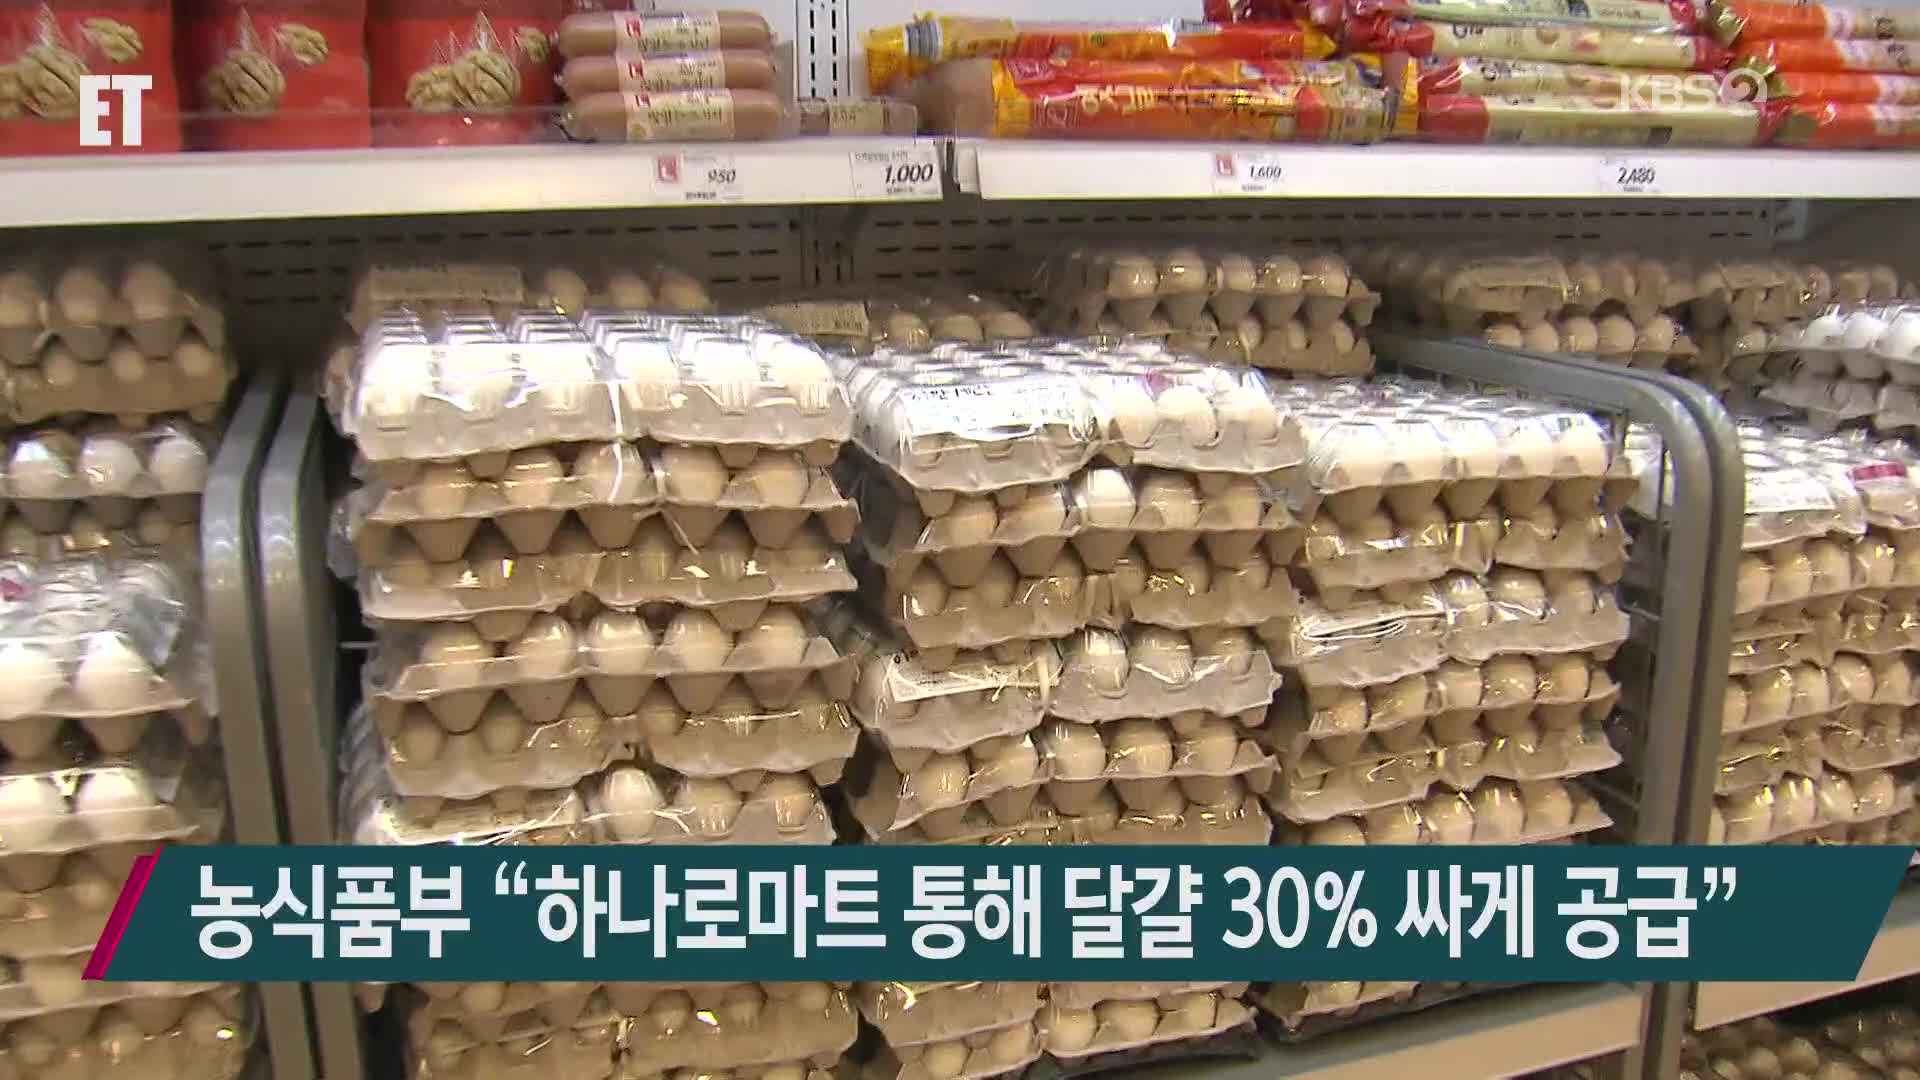 농식품부 “하나로마트 통해 달걀 30% 싸게 공급”